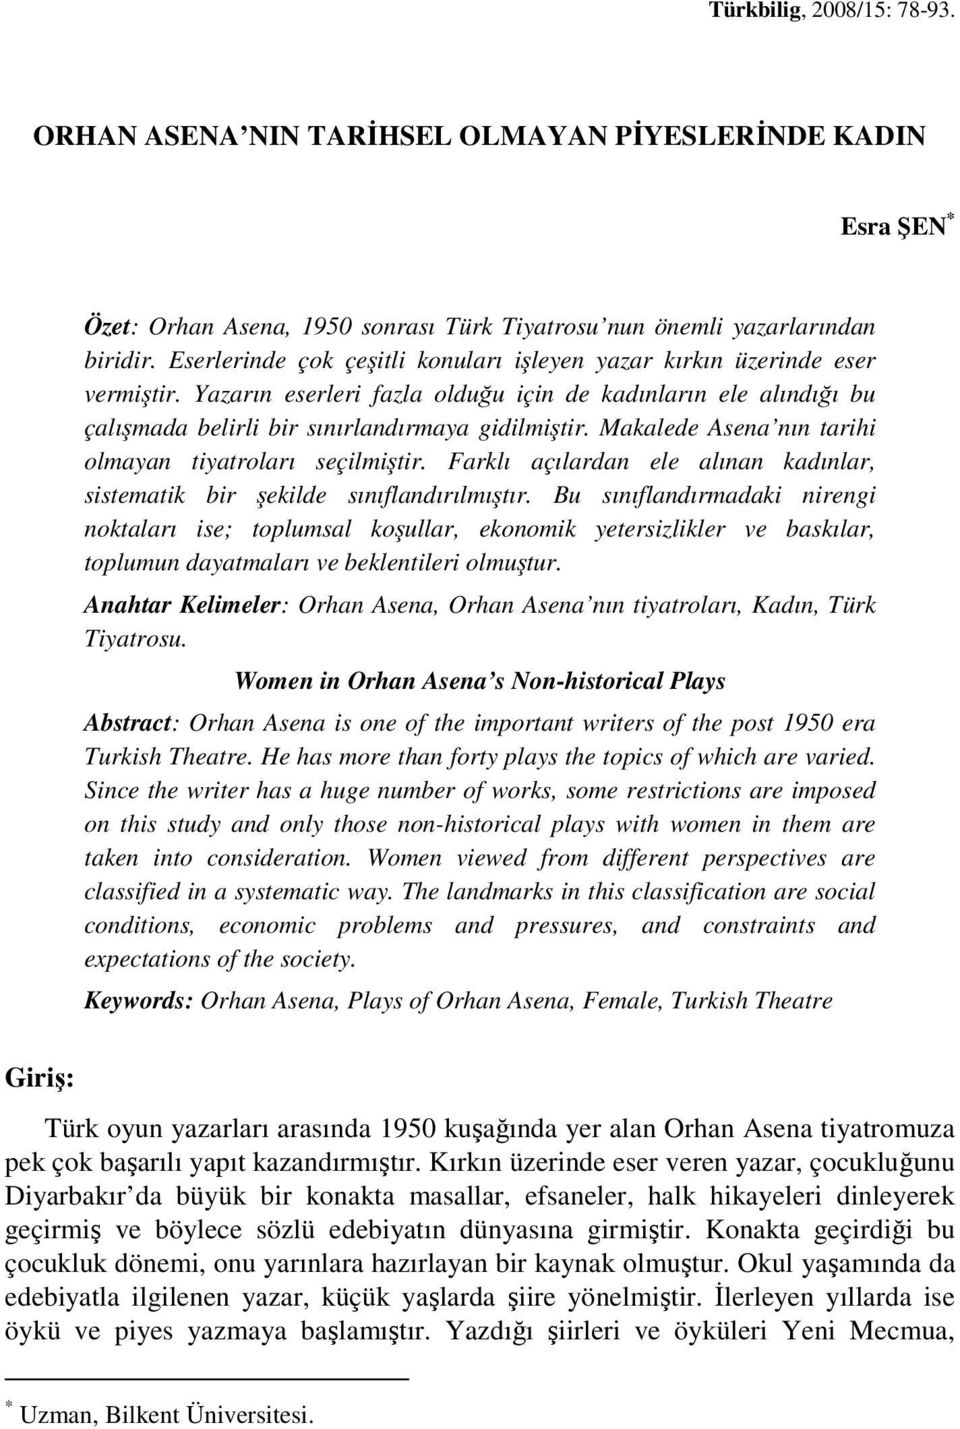 Makalede Asena nın tarihi olmayan tiyatroları seçilmiştir. Farklı açılardan ele alınan kadınlar, sistematik bir şekilde sınıflandırılmıştır.